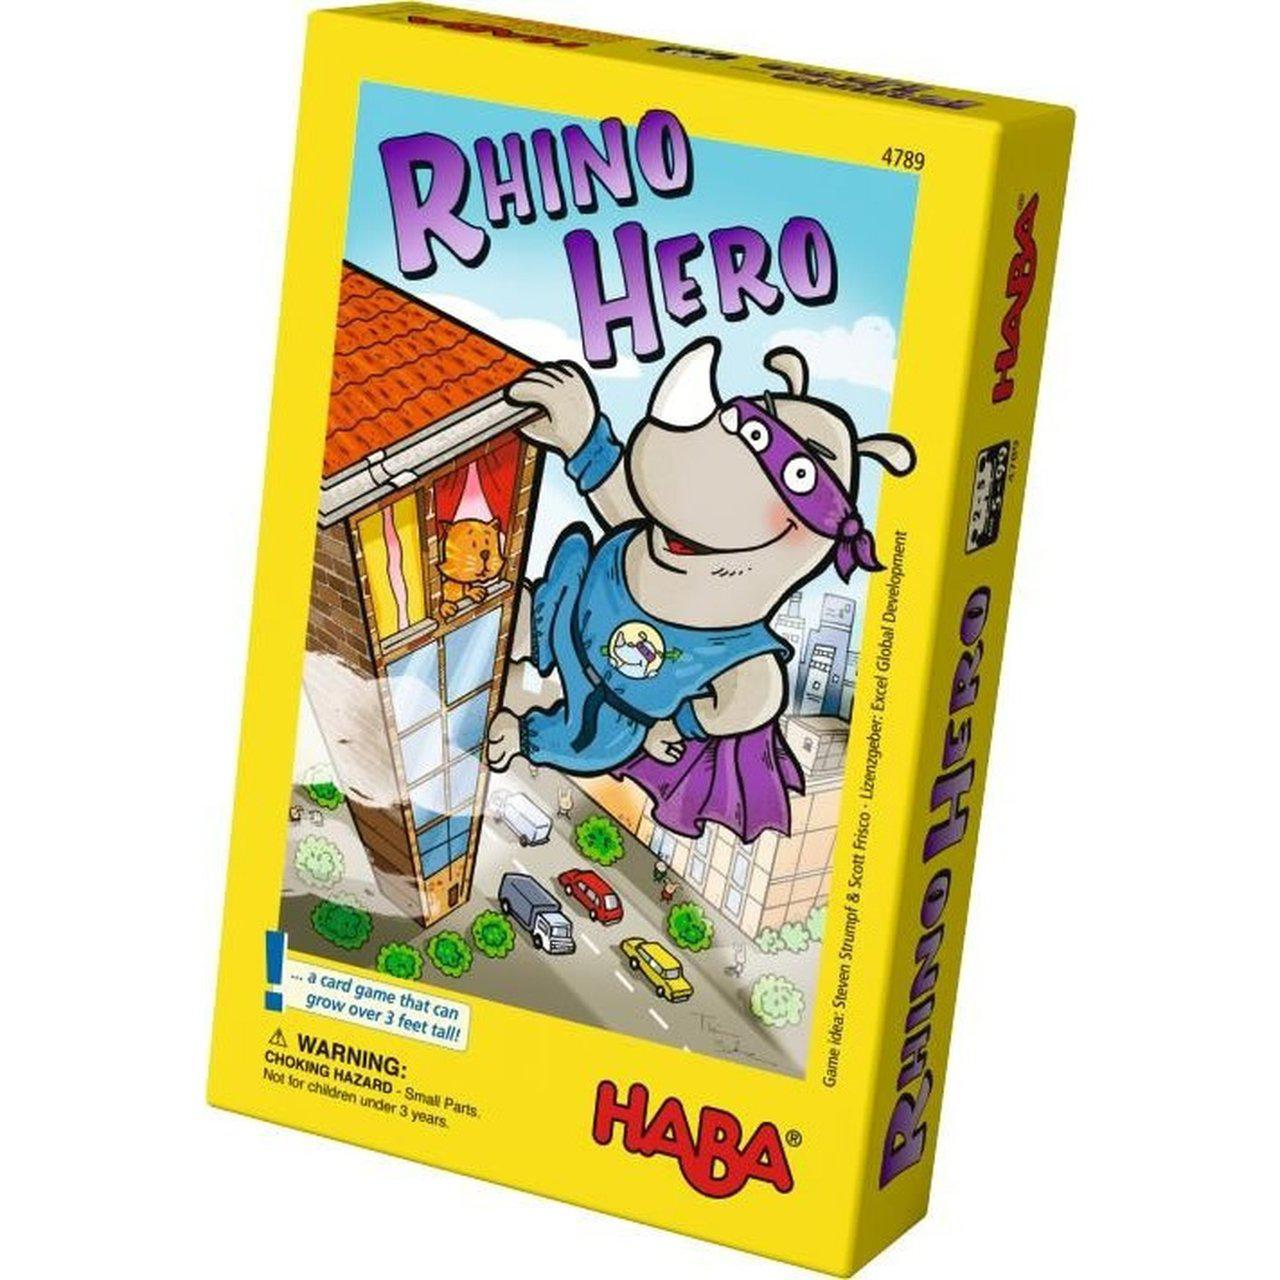 Rhino Hero - The Sword & Board